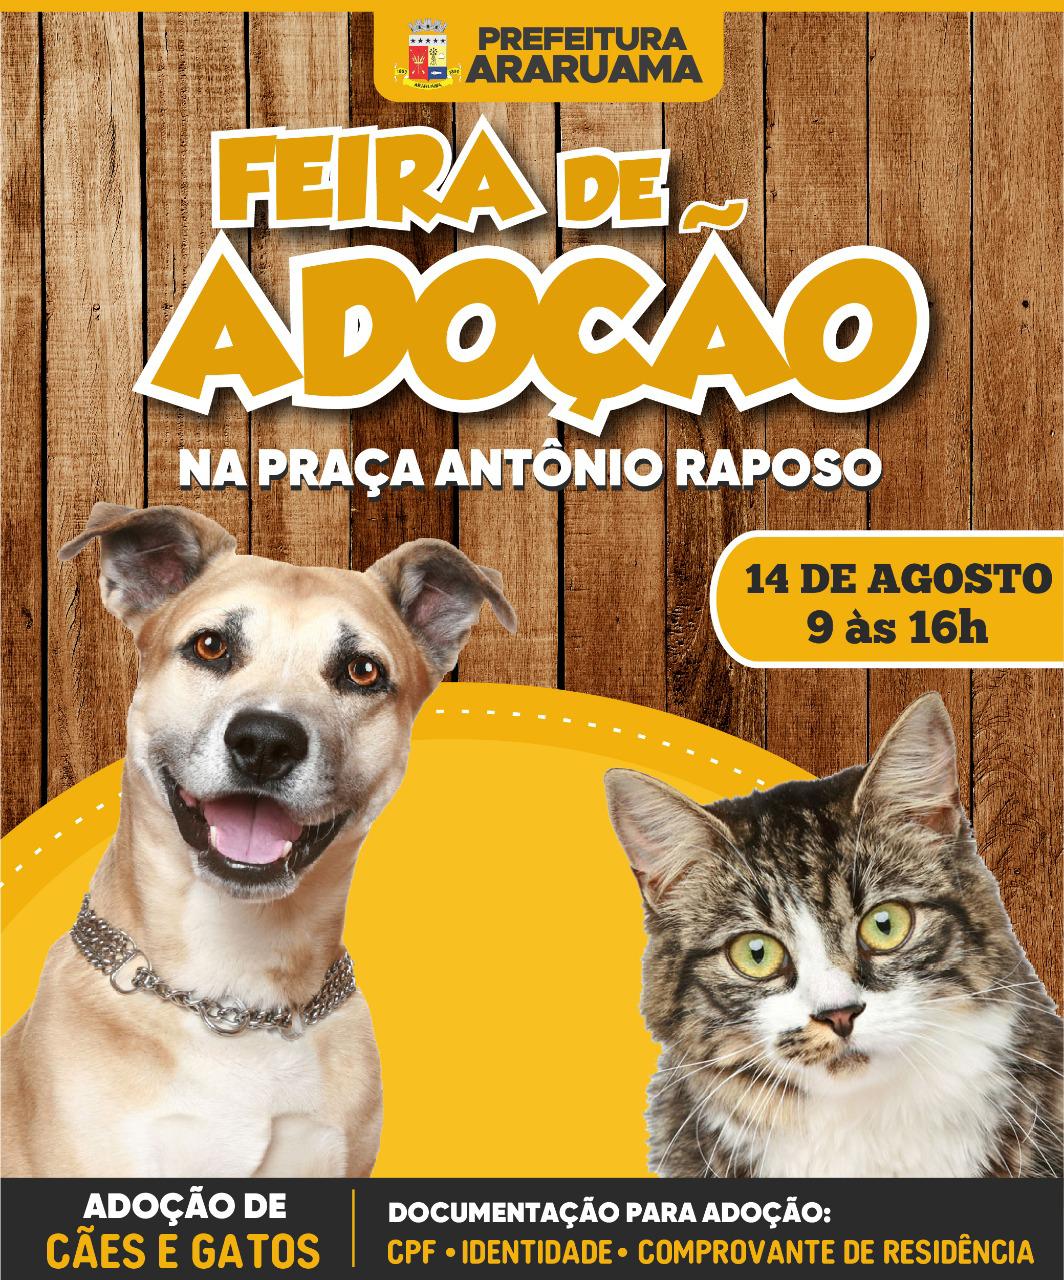 Prefeitura de Araruama vai realizar Feira de Adoção de cães e gatos na Praça Menino João Hélio